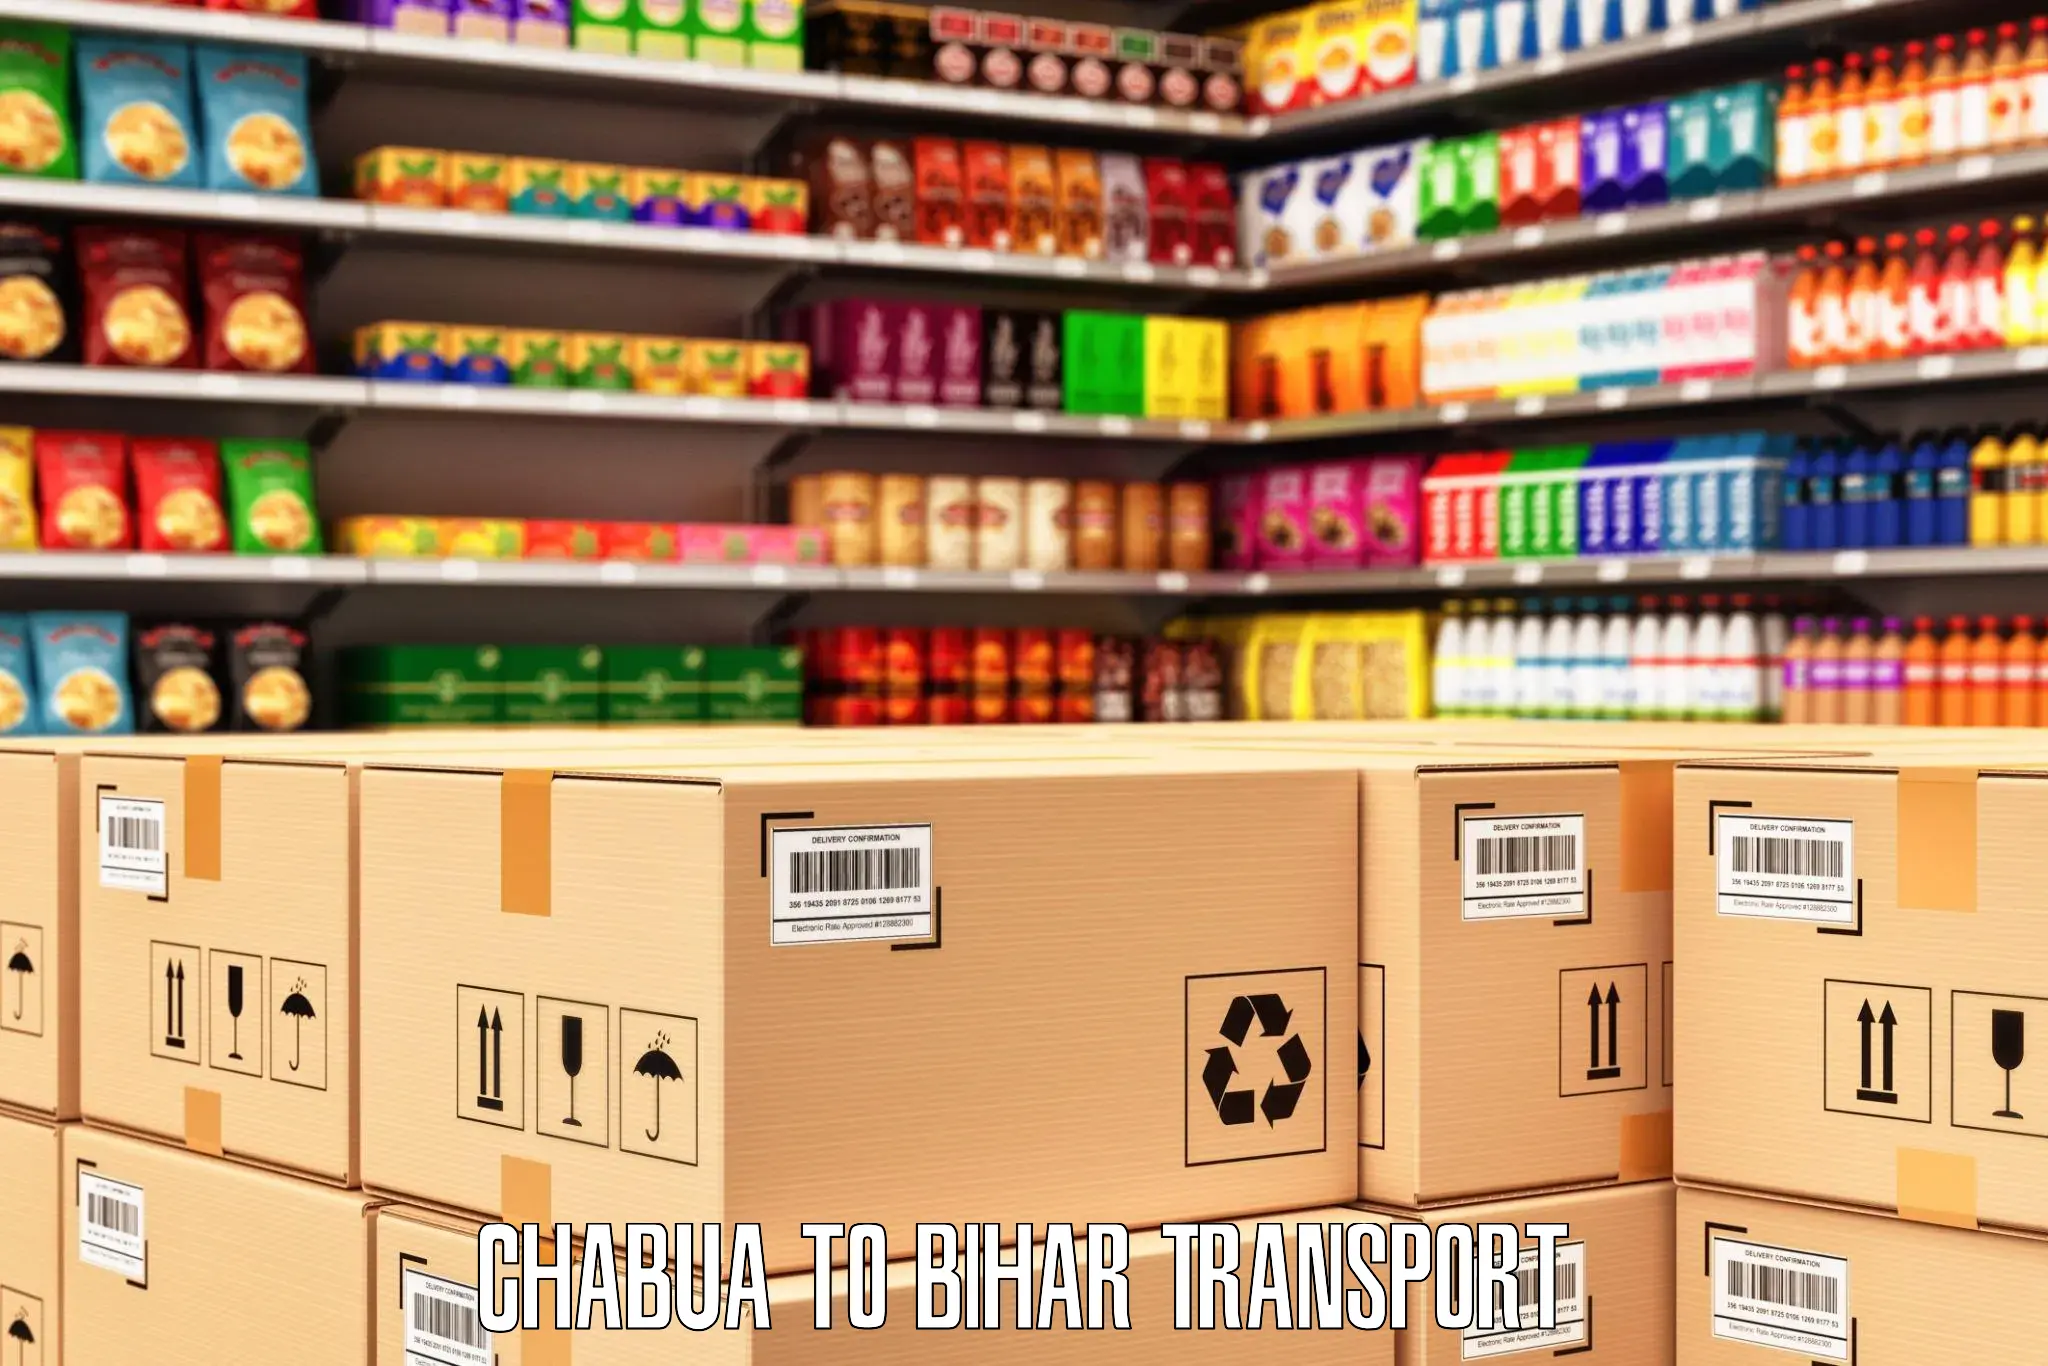 Shipping partner Chabua to Thakurganj